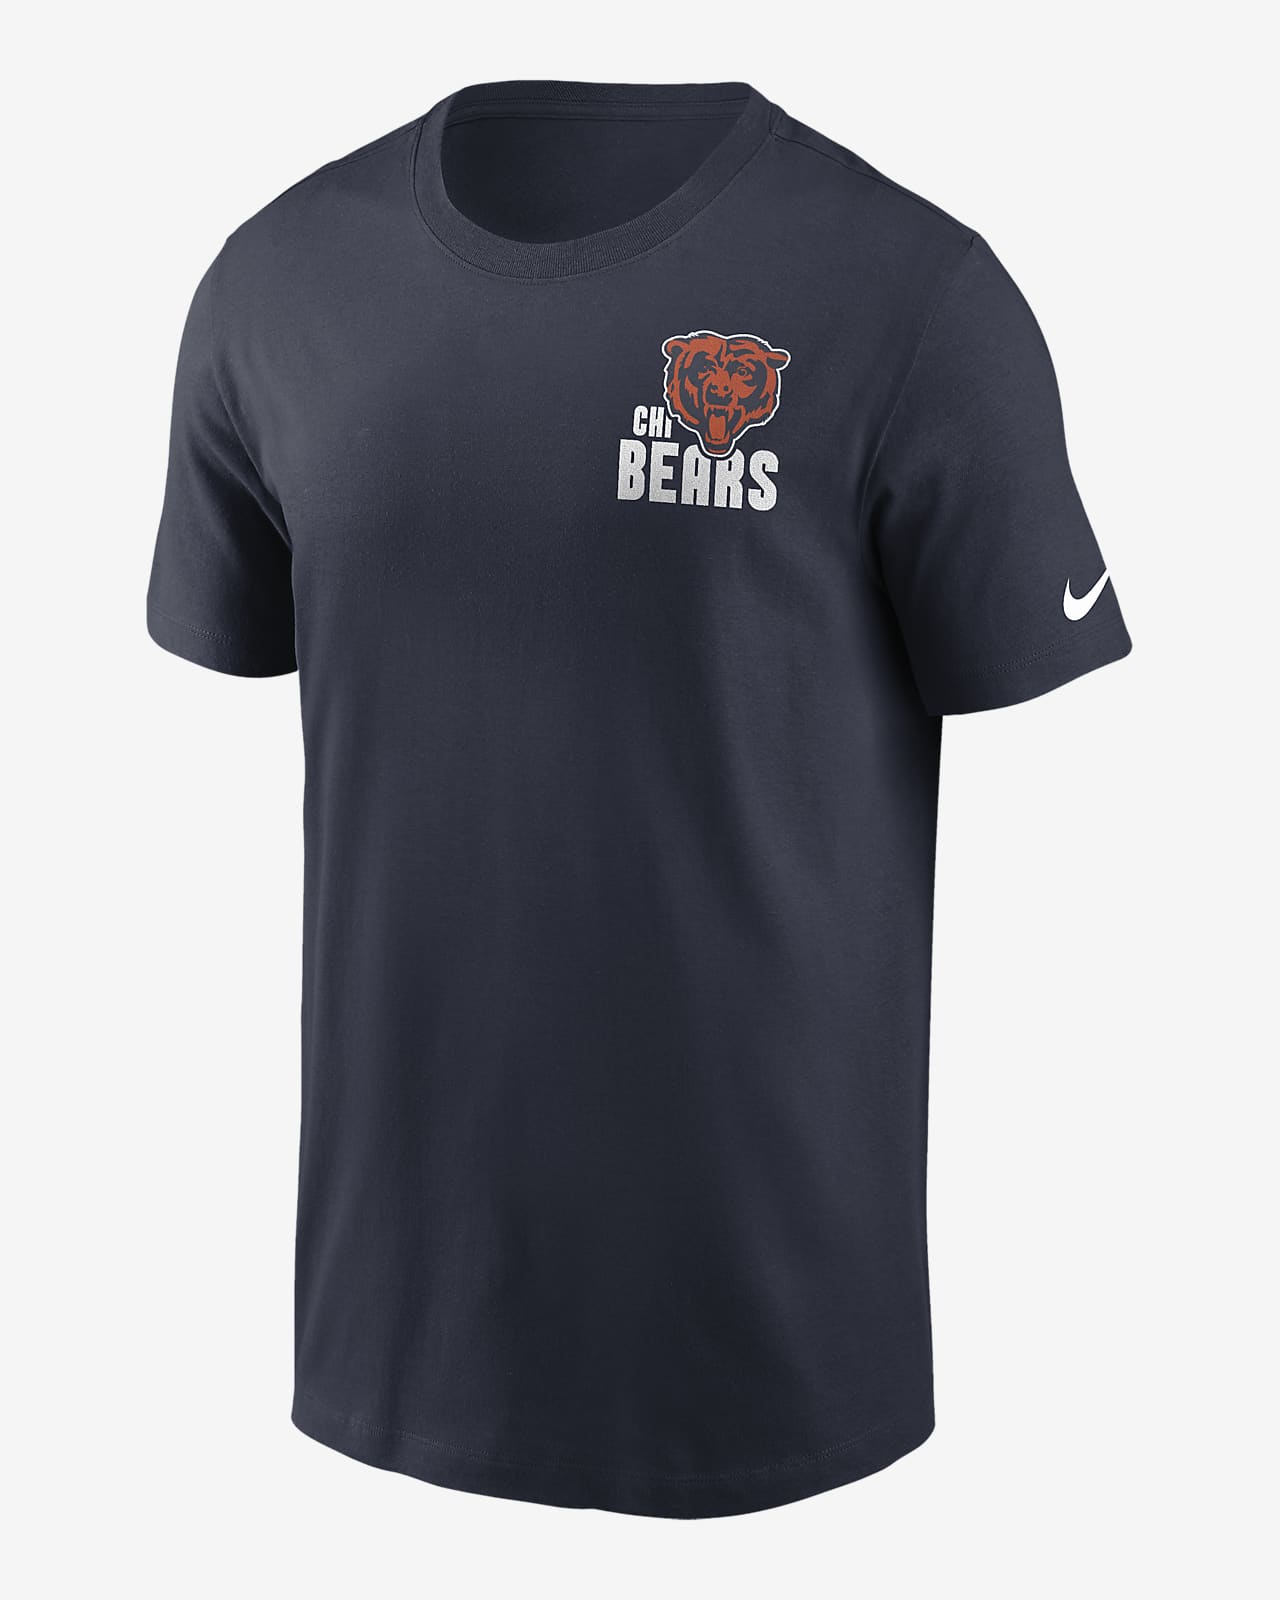 Chicago Bears Blitz Team Essential Men's Nike NFL T-Shirt